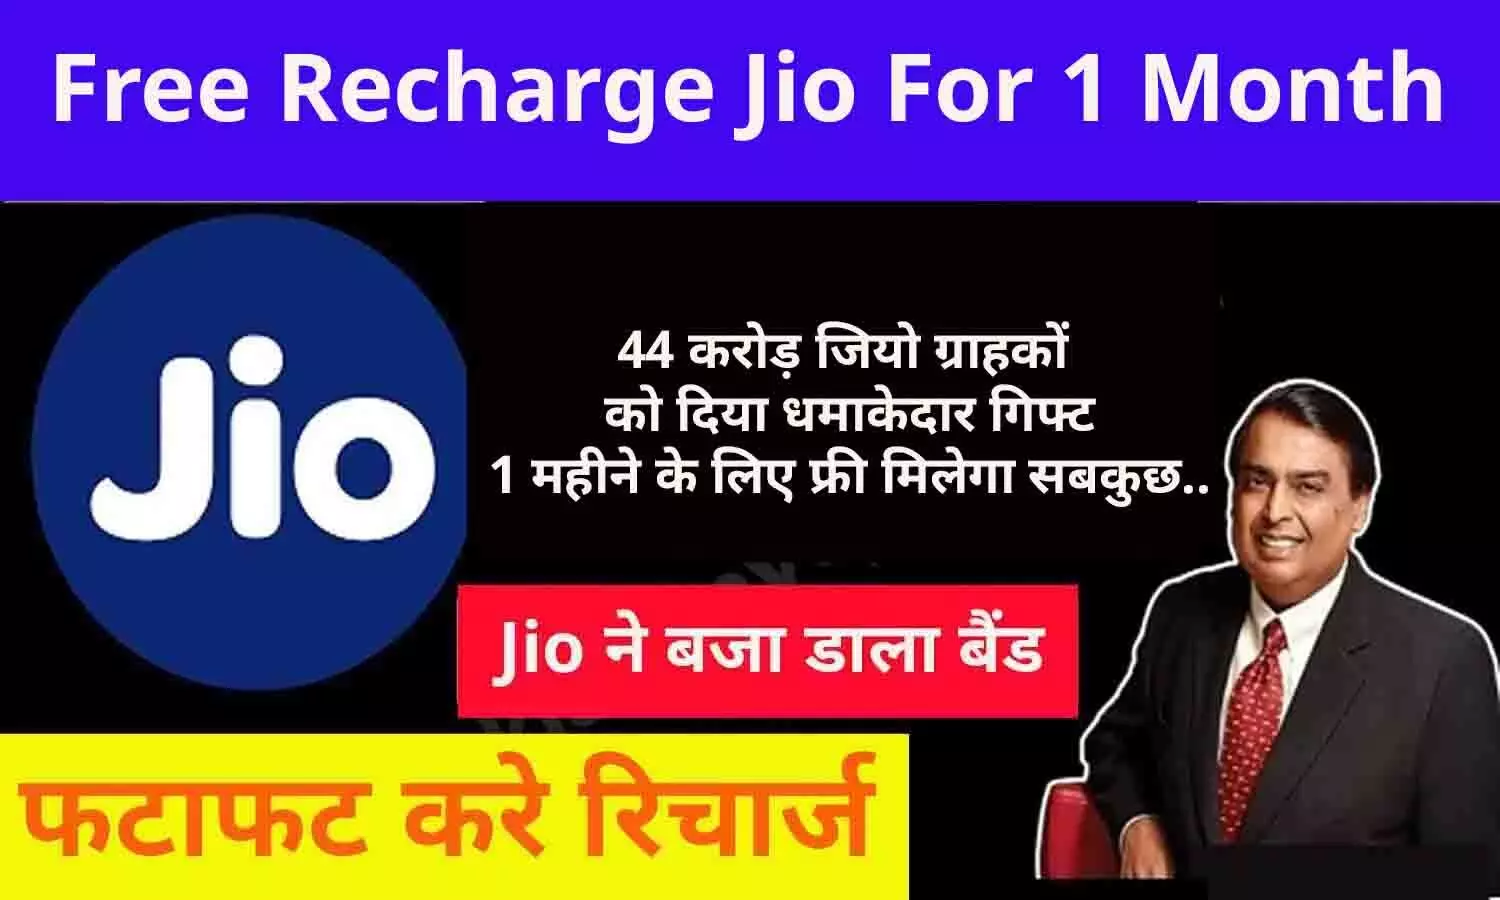 Free Recharge Jio For 1 Month: 44 करोड़ ग्राहकों को बड़ा गिफ्ट, Jio दे रहा एक माह का मुफ्त रिचार्ज! Data और Calling सब फ्री, फटाफट उठाएं फायदा